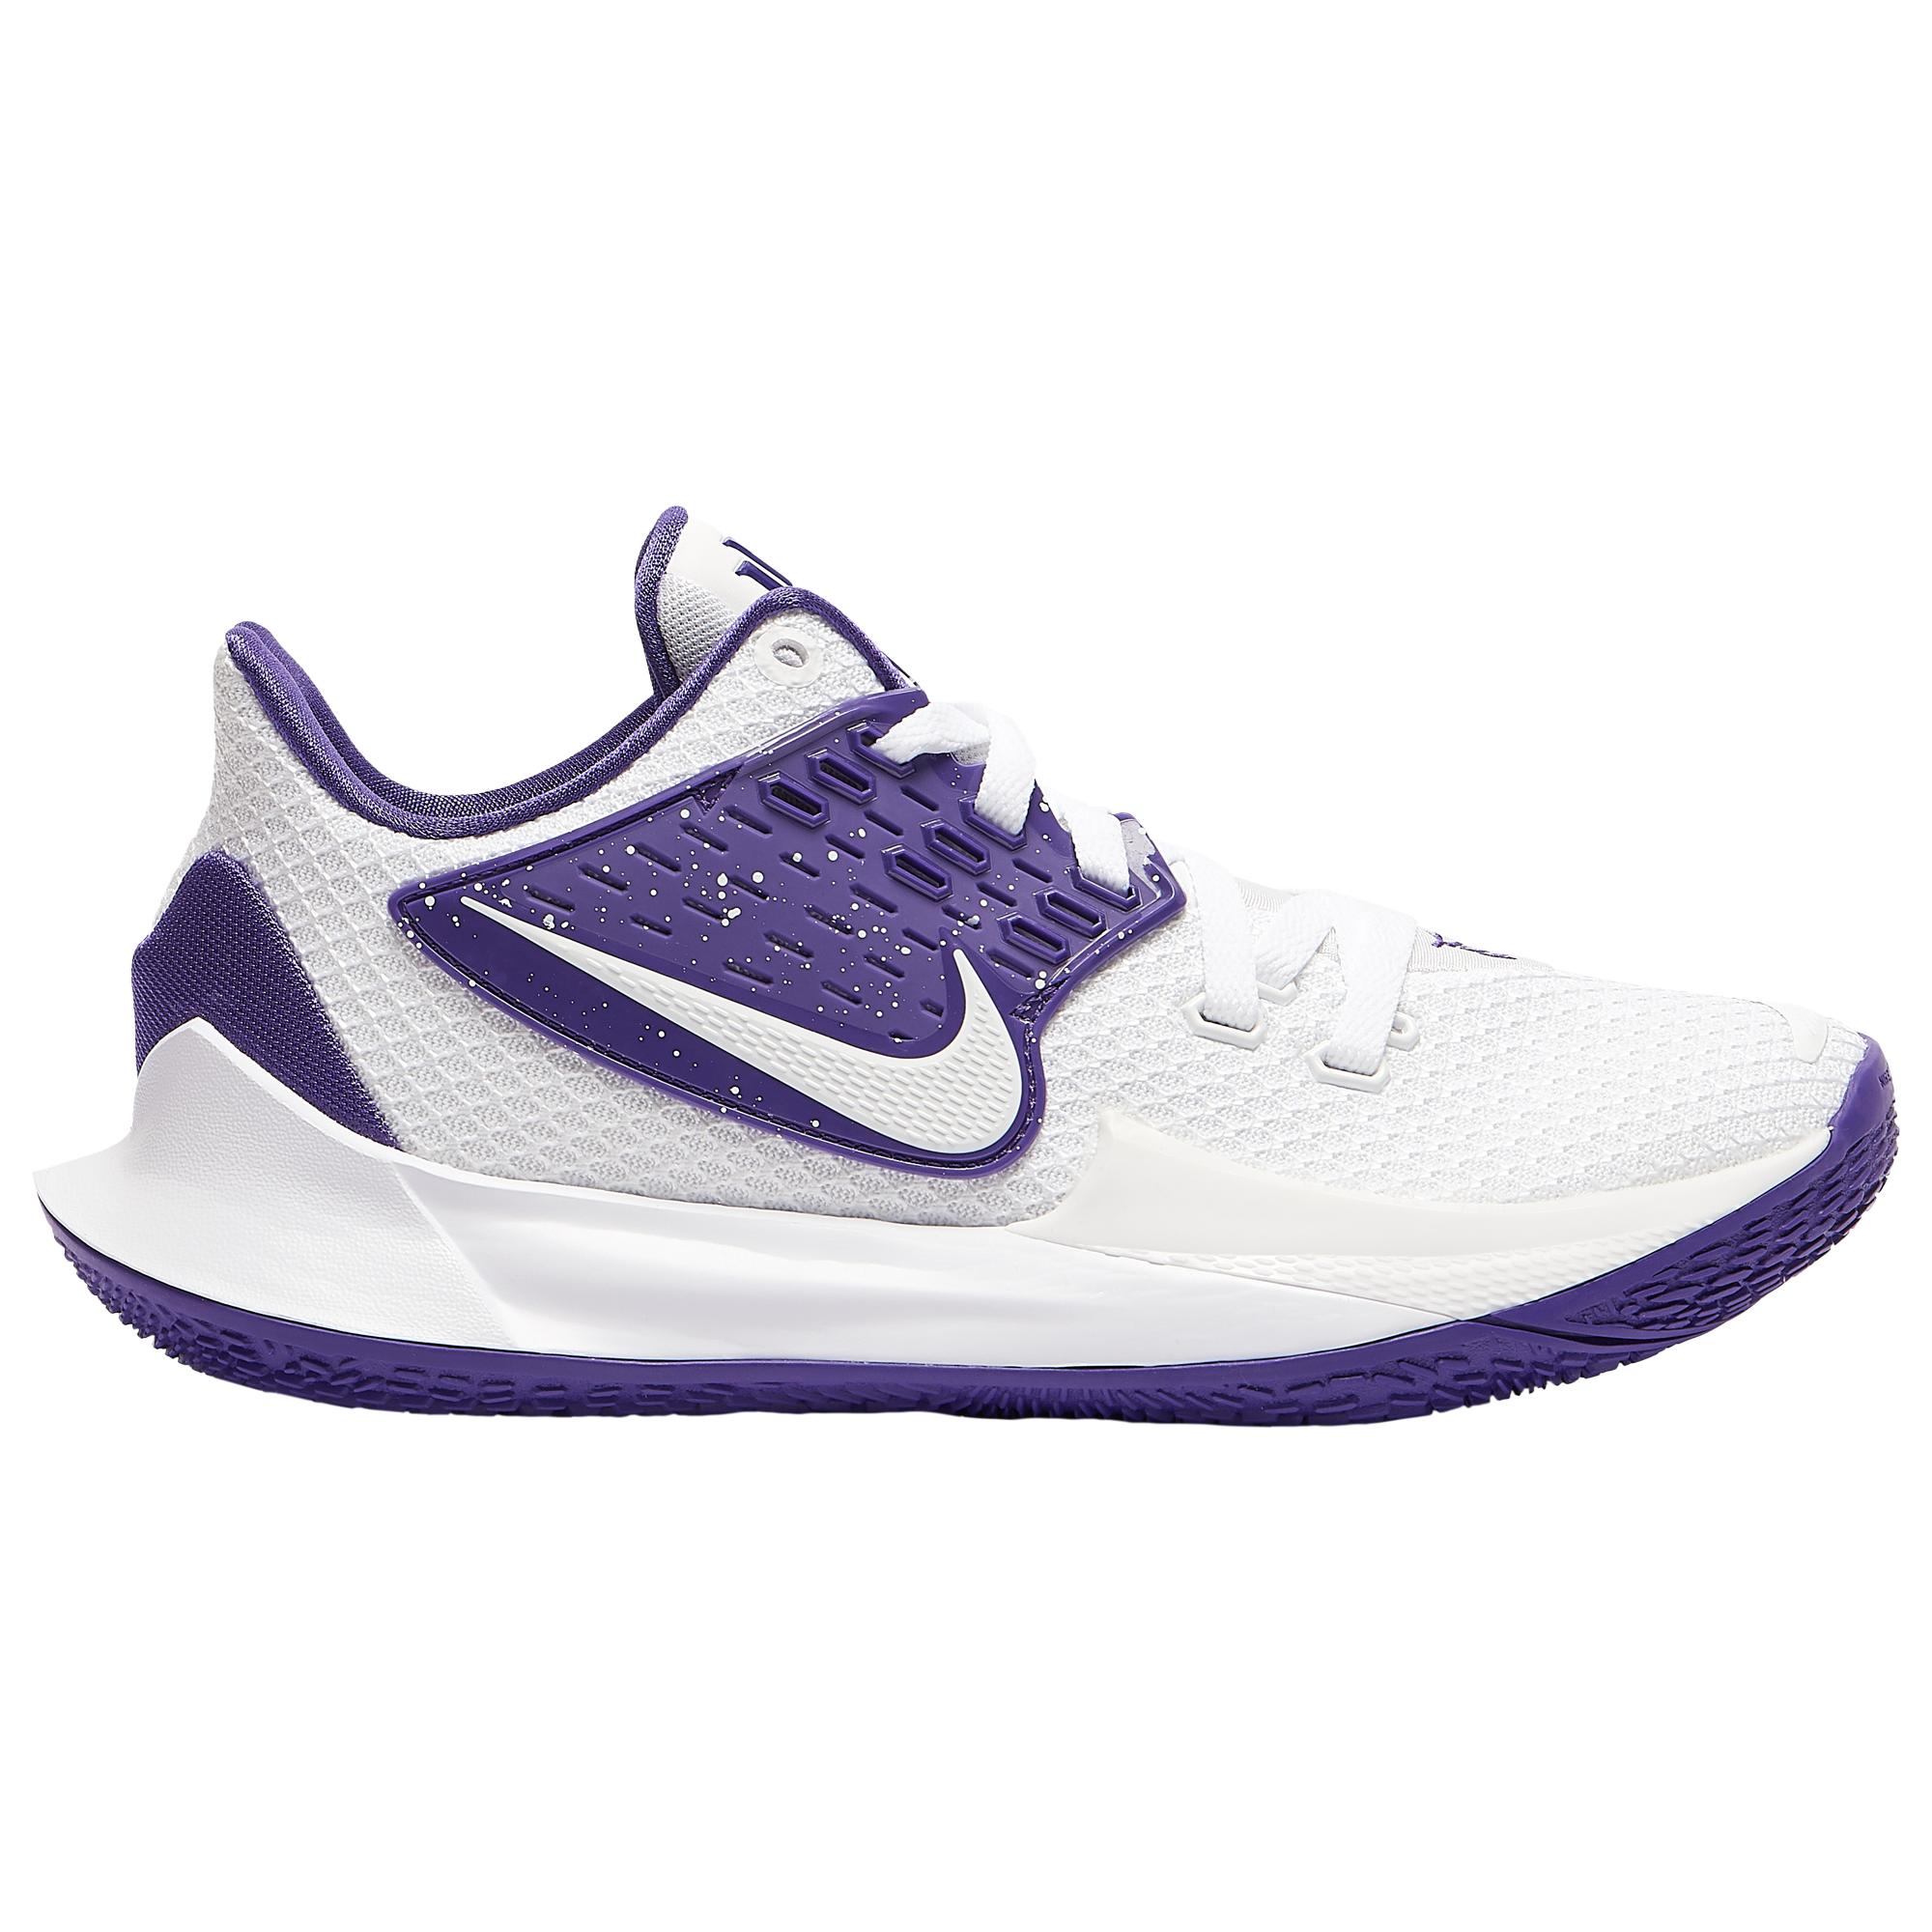 Nike Kyrie Low 2 in Purple for Men - Lyst